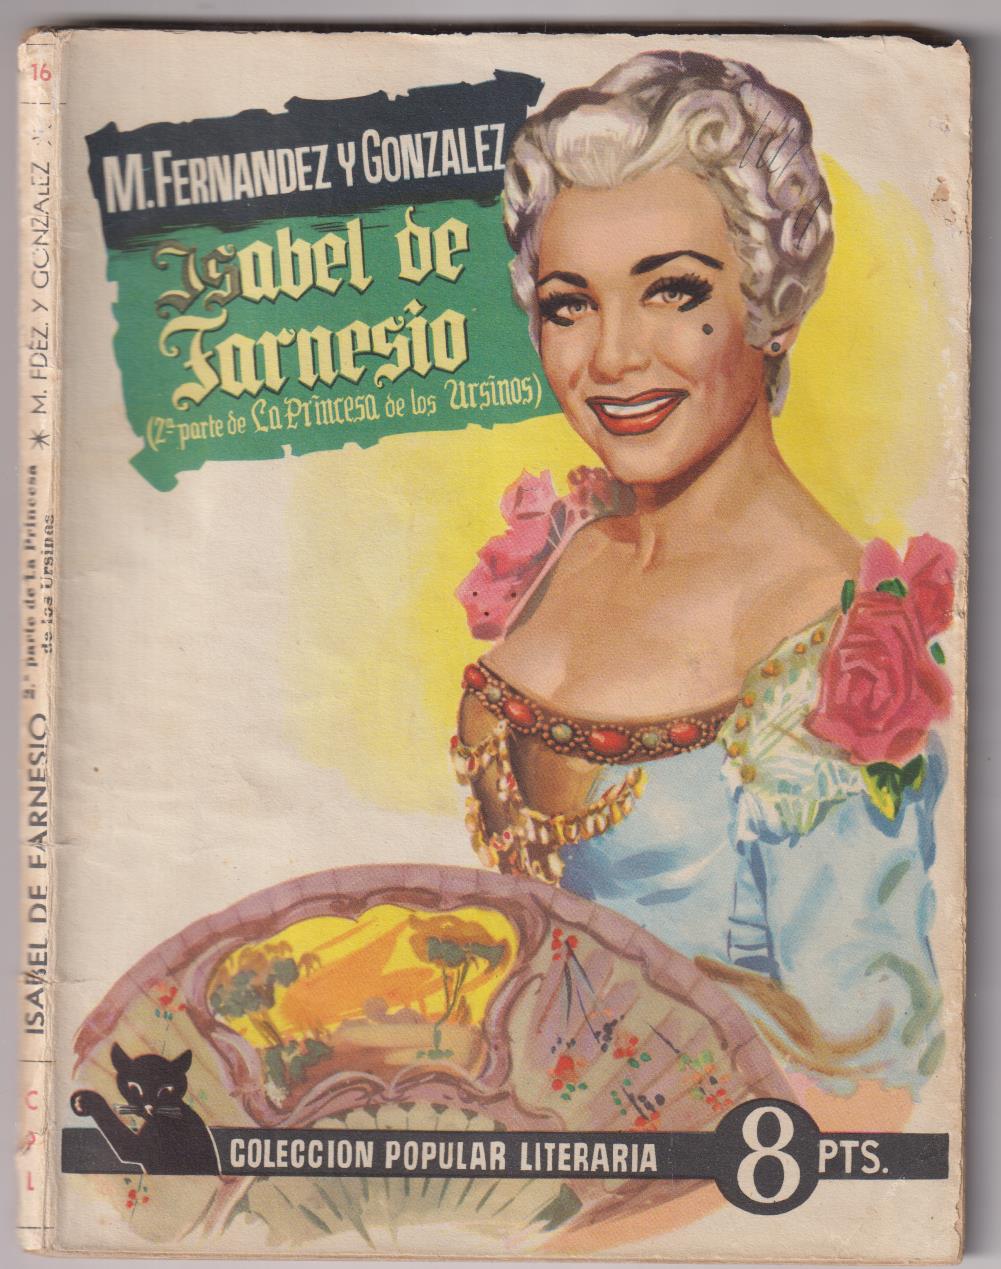 Colección popular Literaria nº 16. M. Fernández y González. Isabel de Farnesio, Año 1955